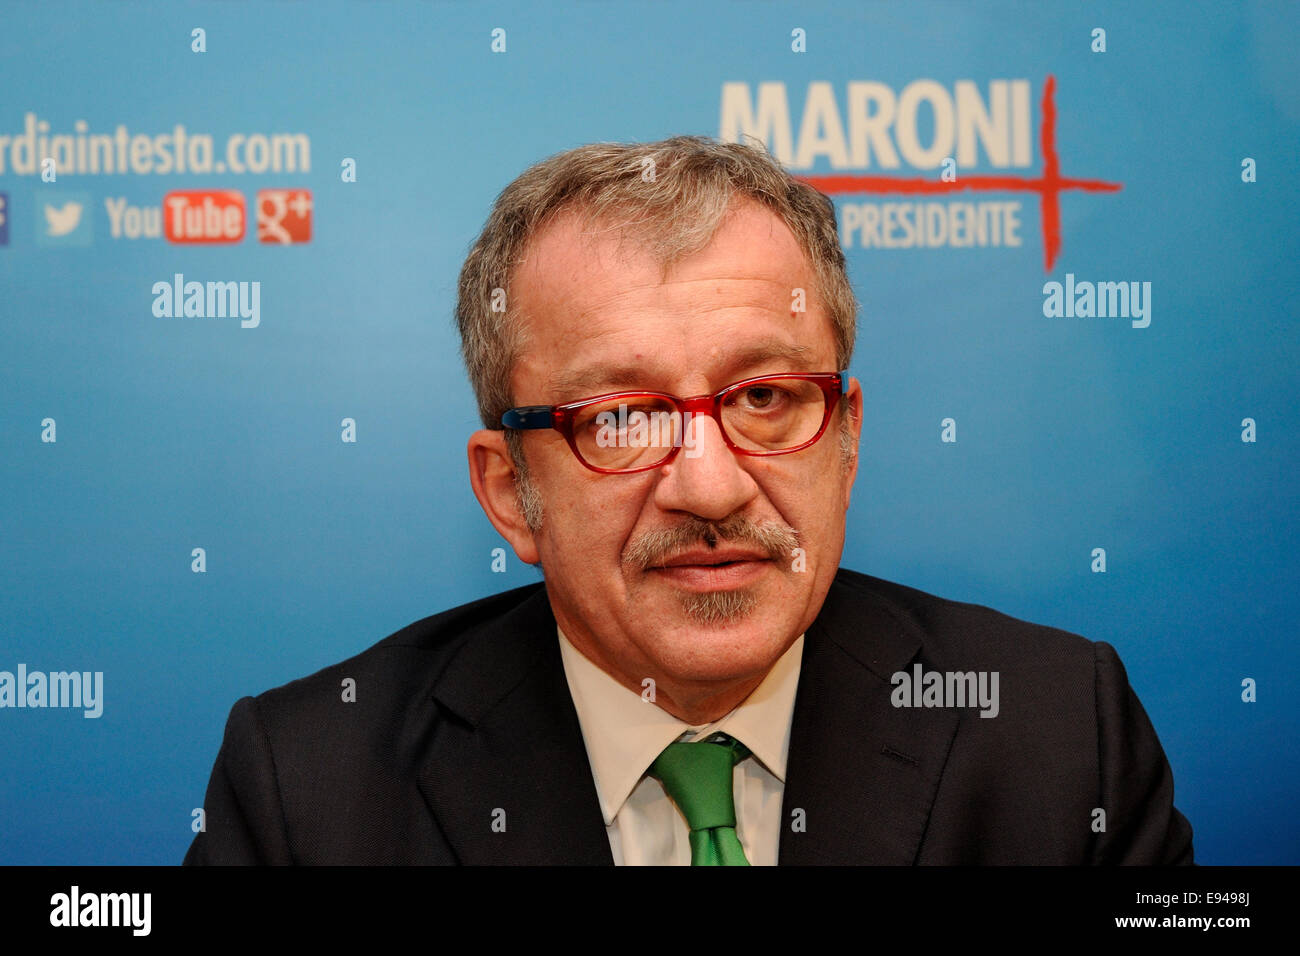 Roberto Maroni Präsident der Lombardei Stockfoto